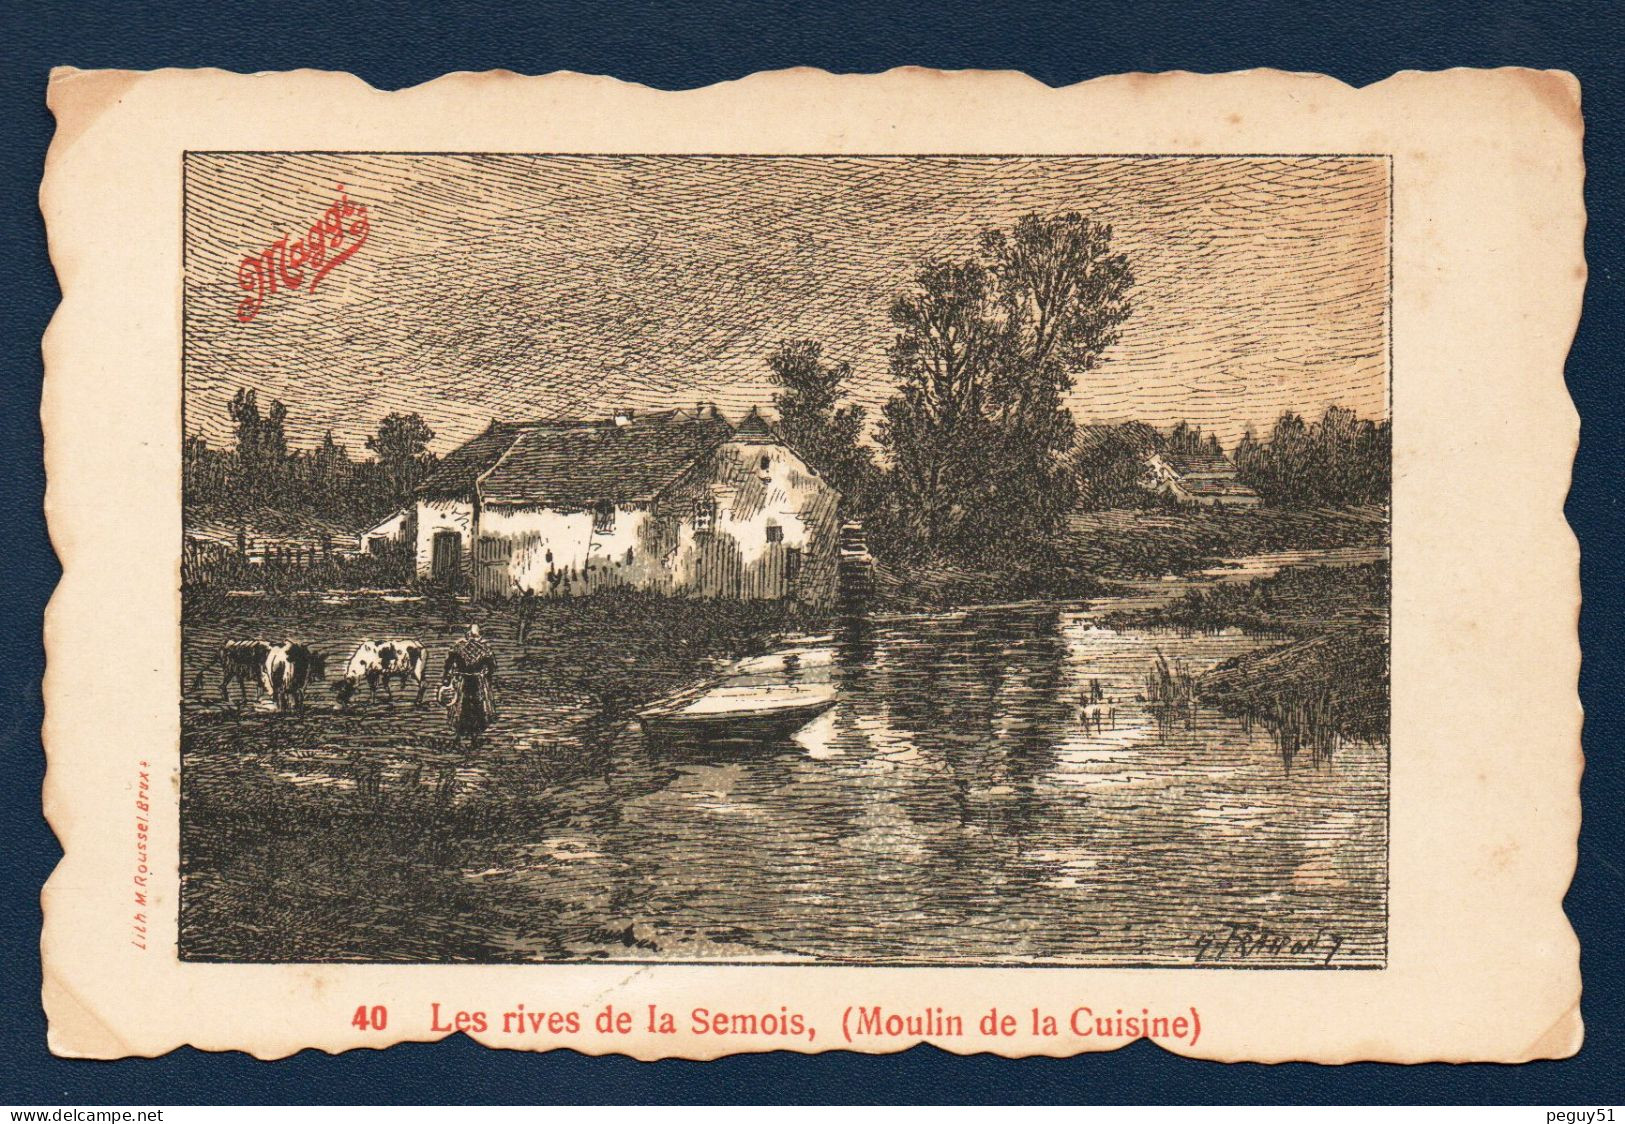 Lacuisine (Florenville). Les Rives De La Semois. Moulin De La Cuisine. Fermière Et Ses Vaches. Pub  Bouillon Maggi. - Florenville